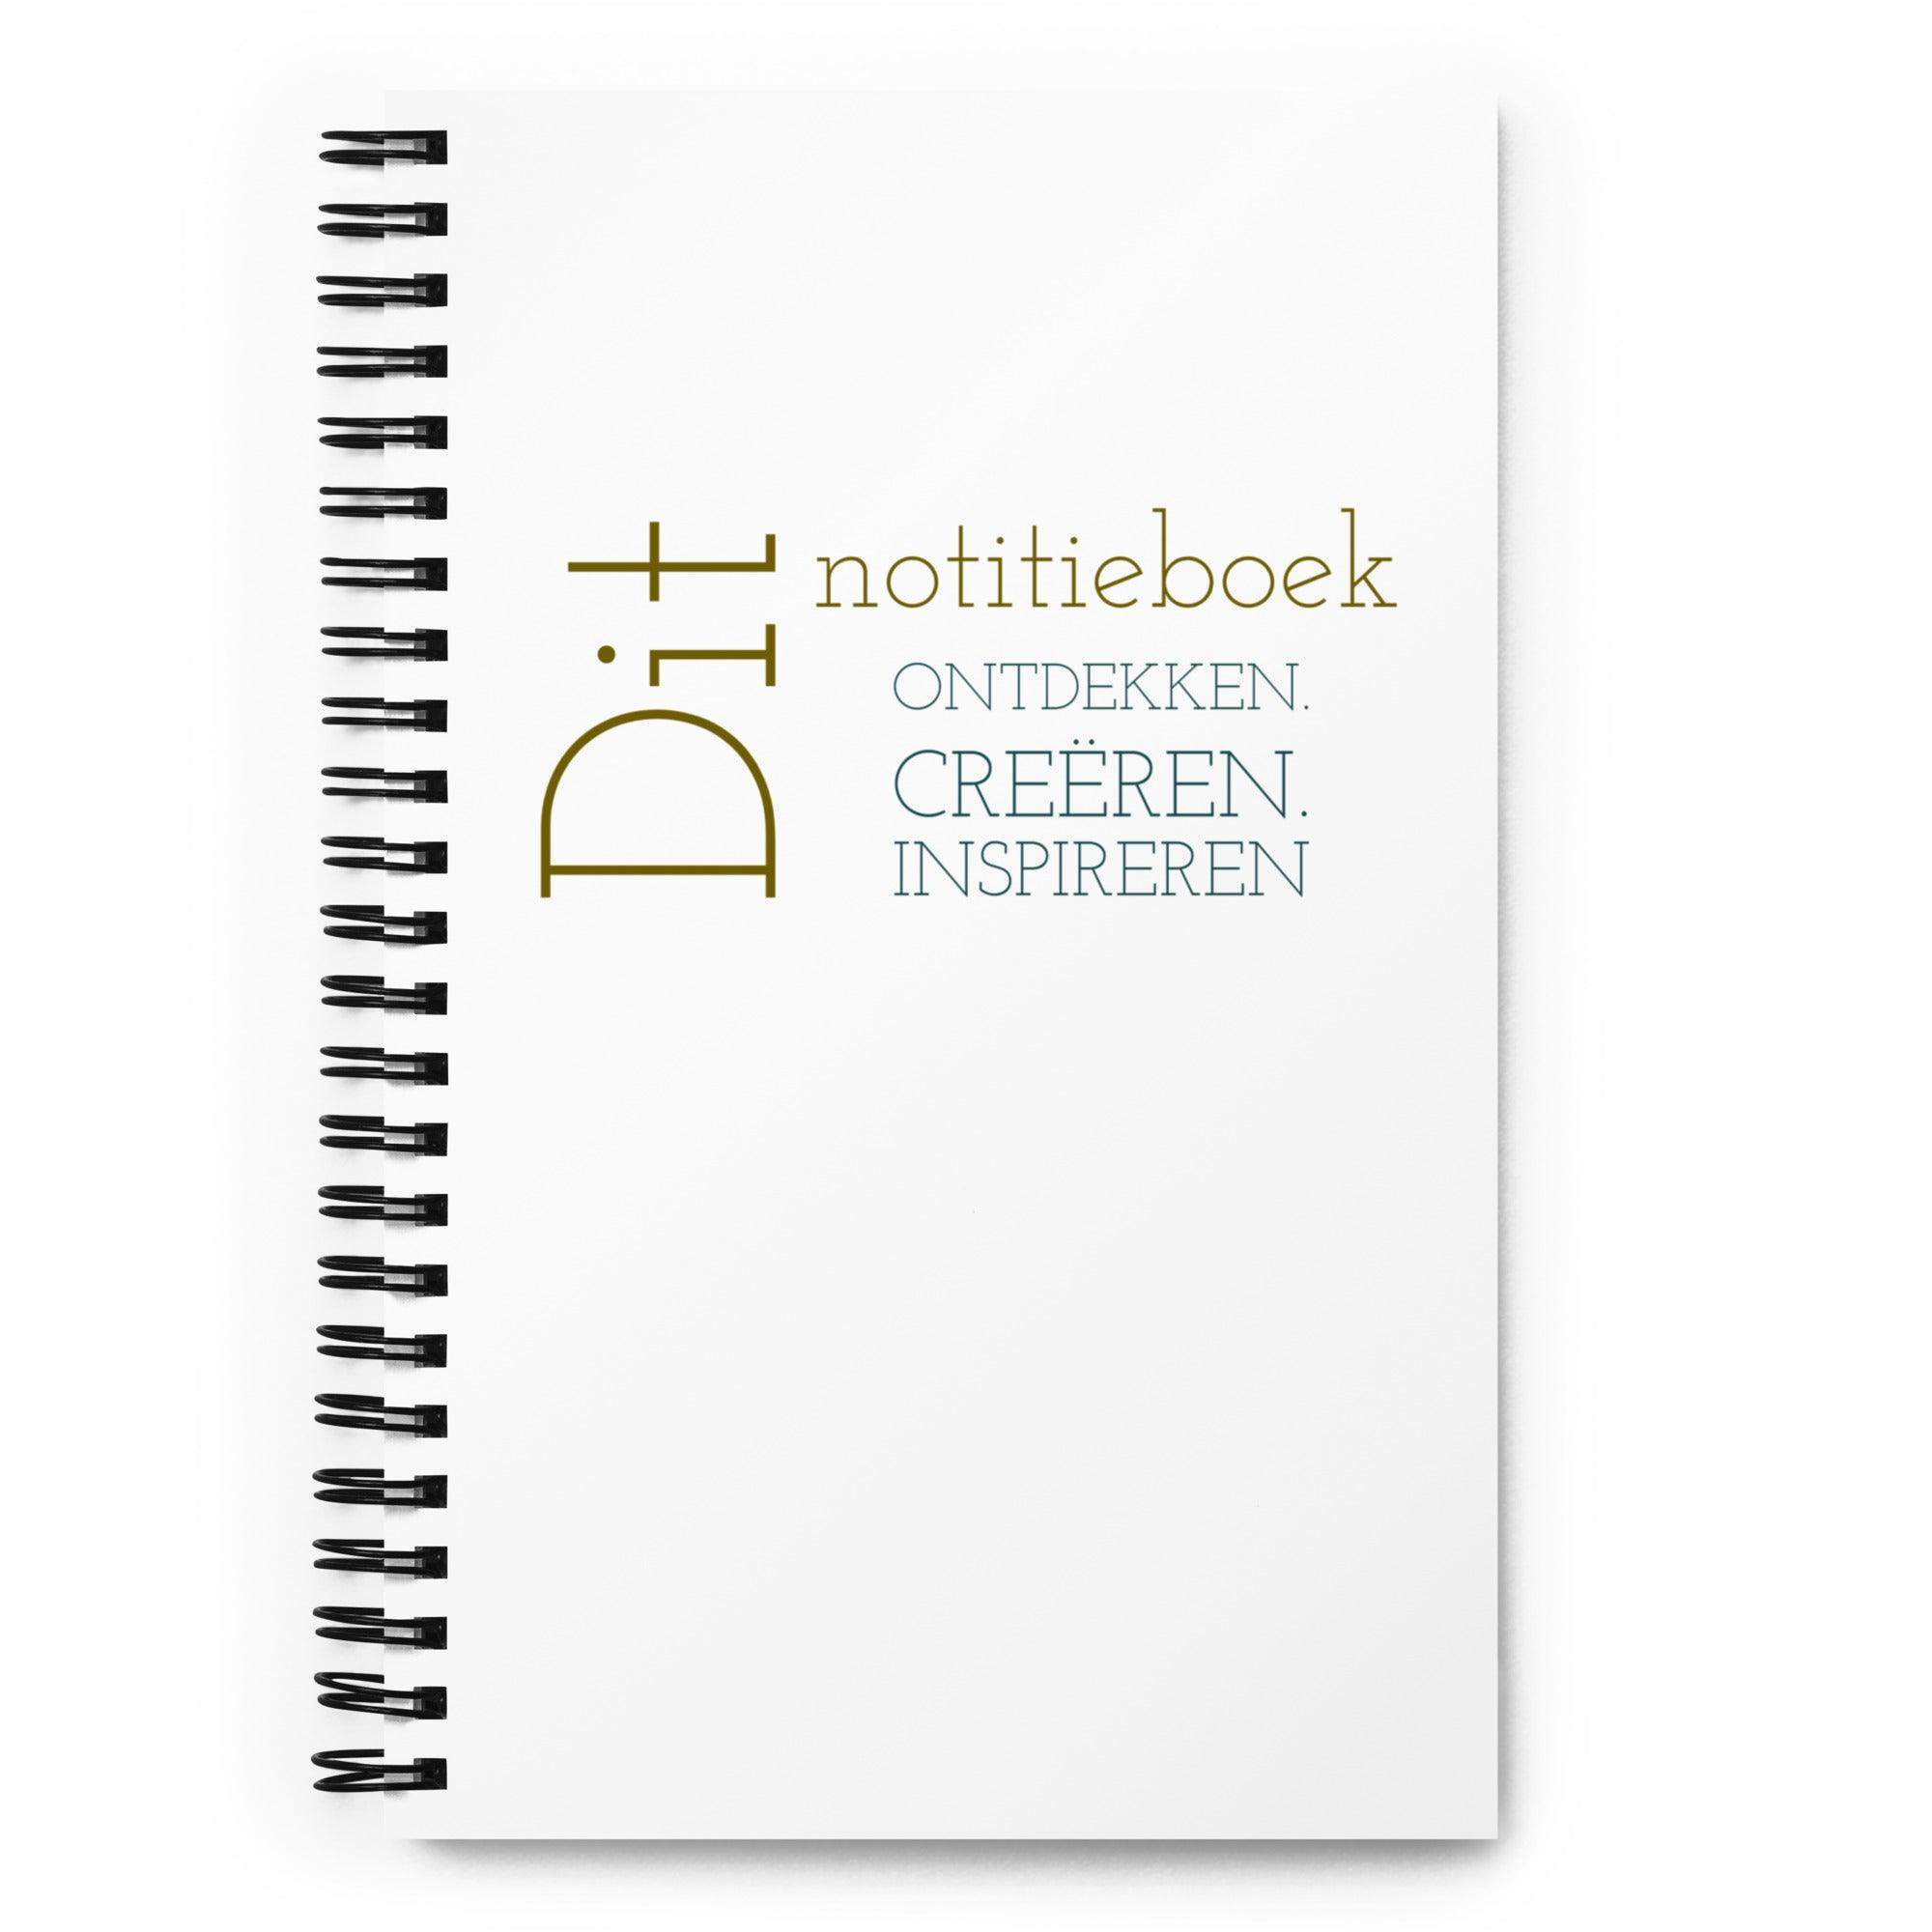 Notebook - Ontdekken. Creëren. Inspireren